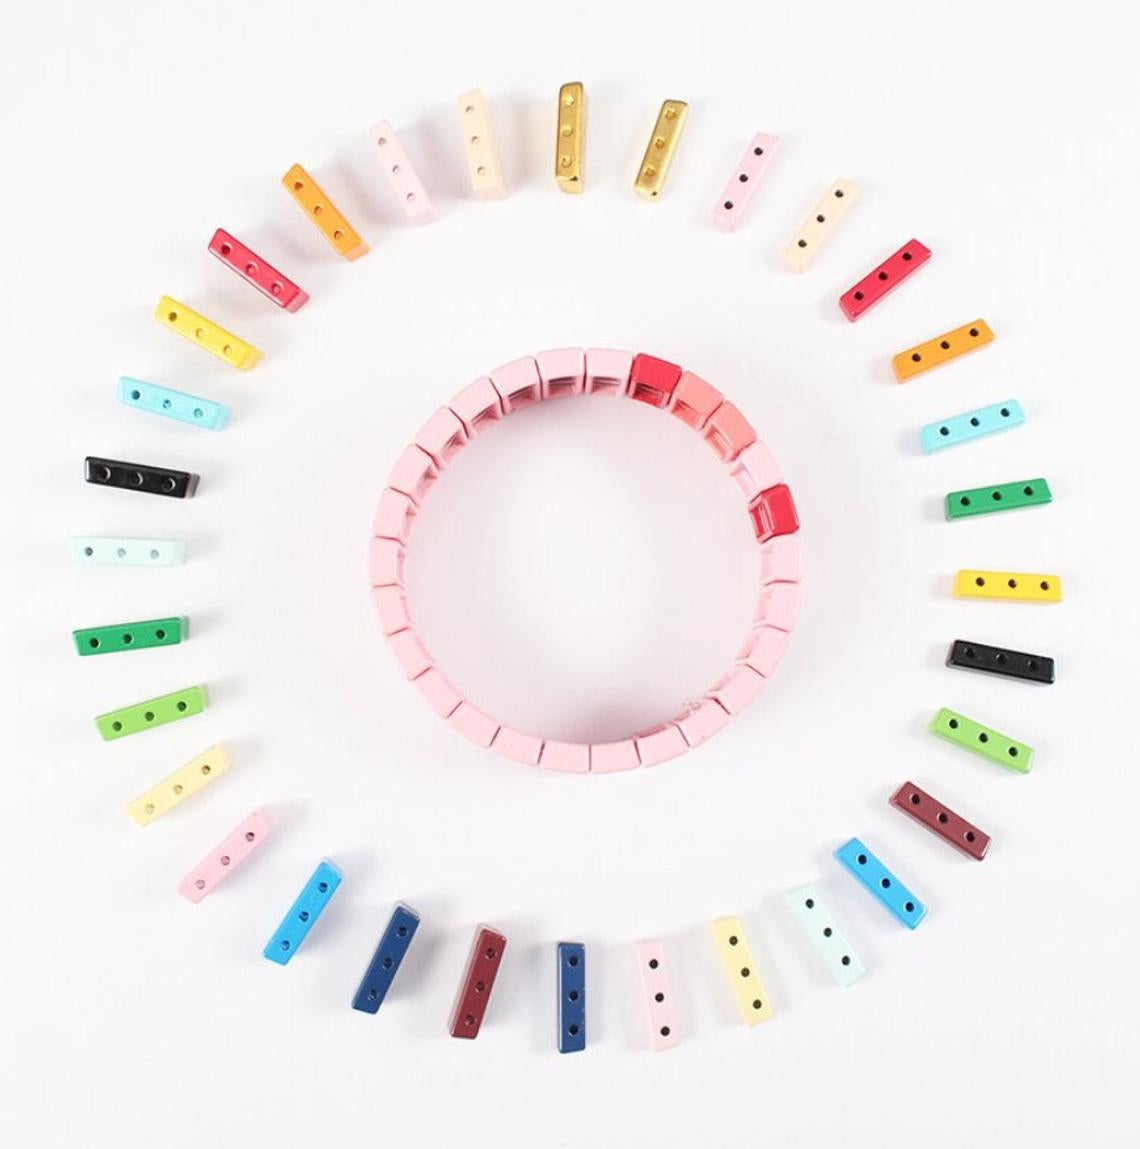 Refresh Stretch Bracelet DIY Kit – Jewelry Made by Me